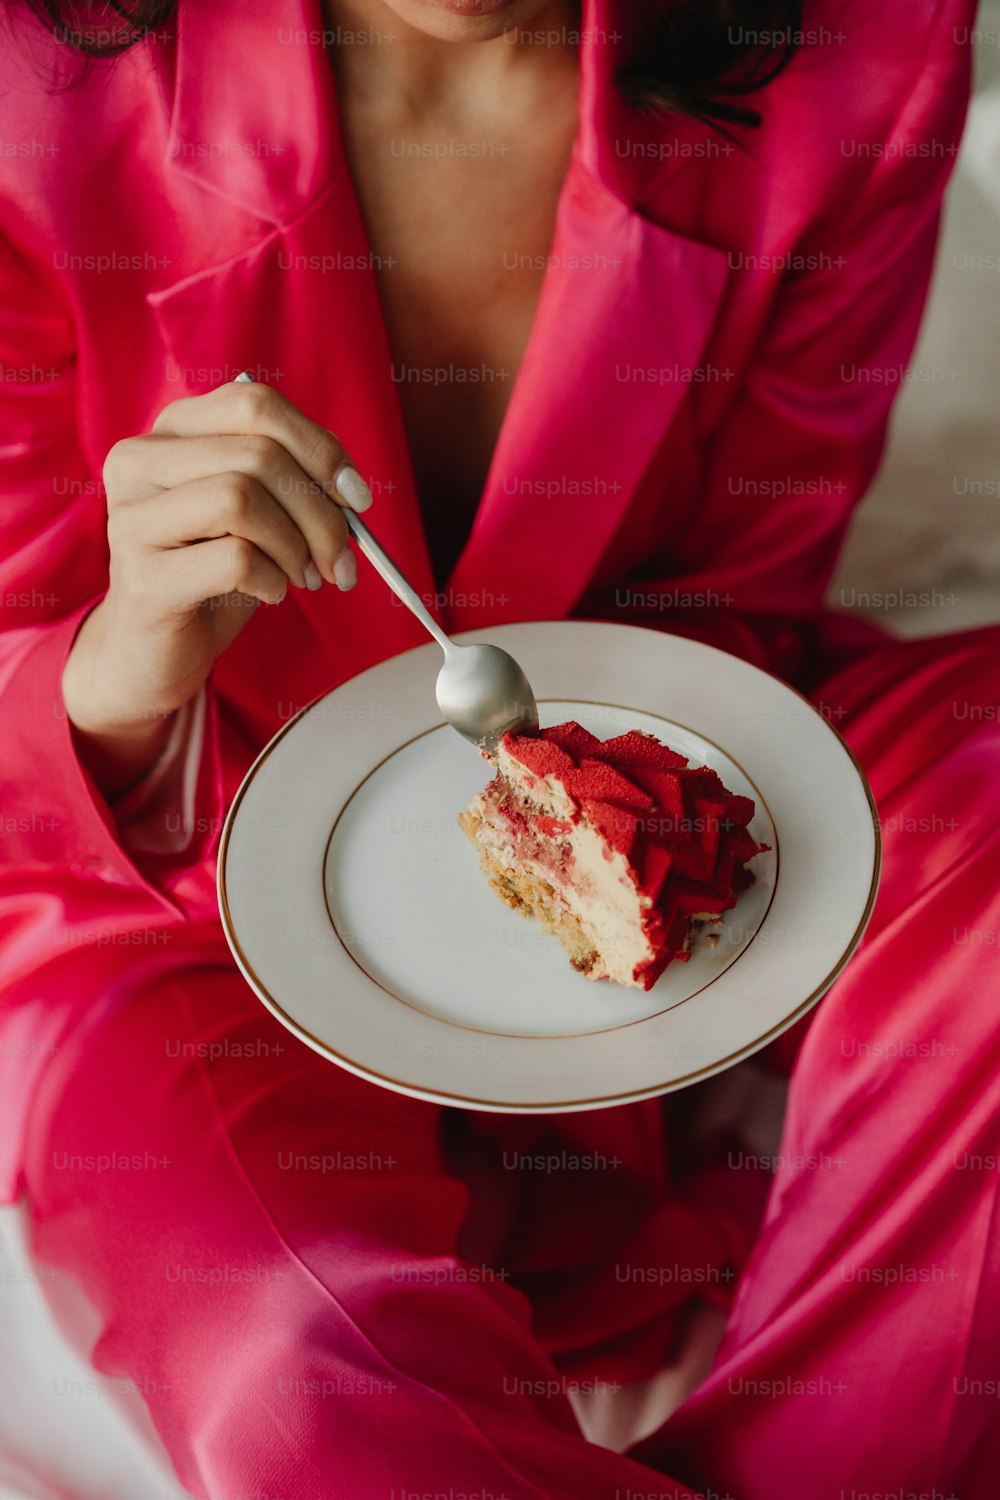 uma mulher em um terno rosa segurando um prato com um pedaço de bolo sobre ele